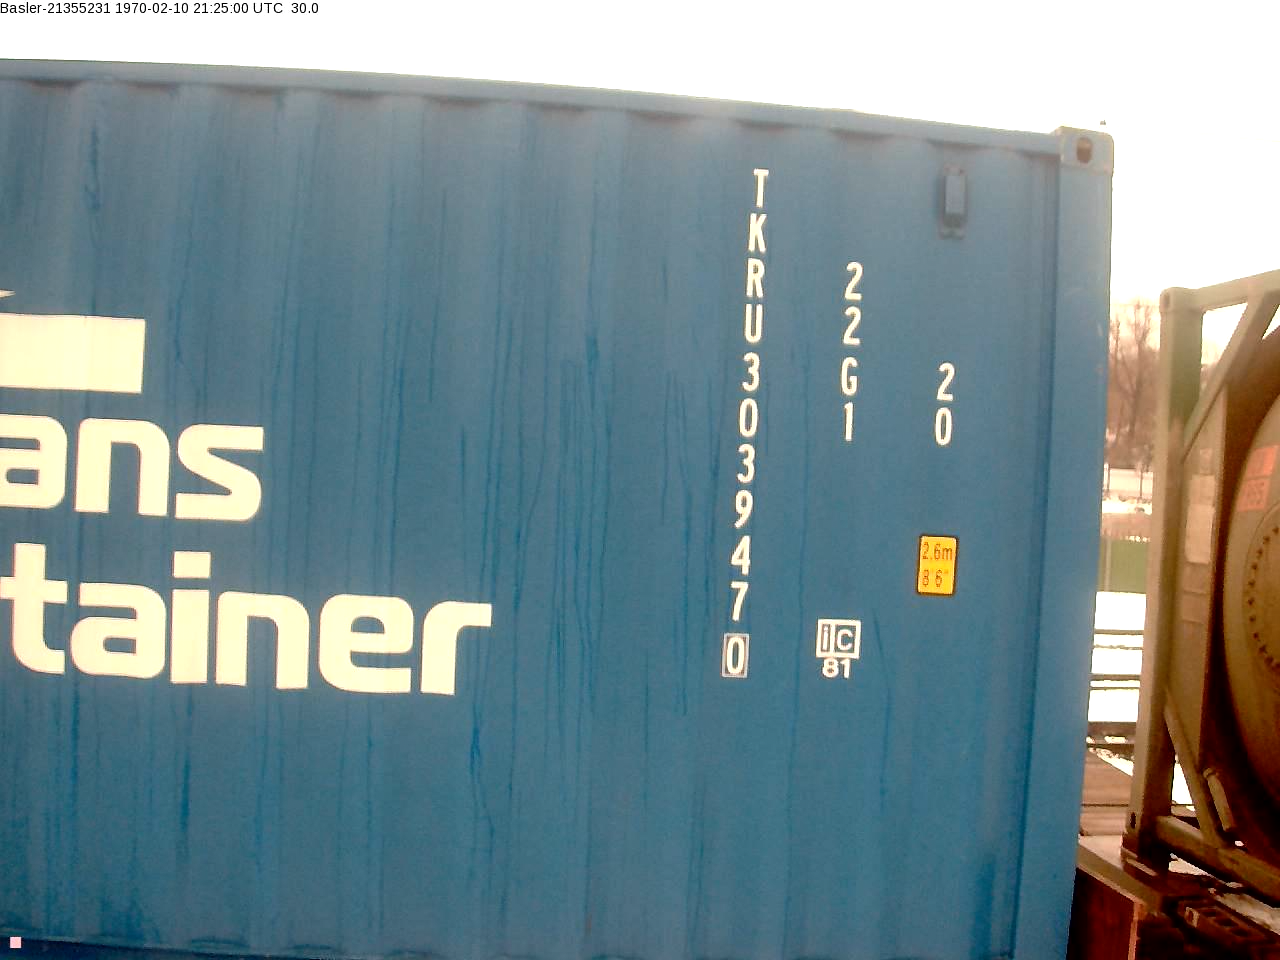 Номер контейнера. Номер контейнера пример. Номер тары контейнера. Номер контейнера на контейнере. Отследить морской контейнер по номеру